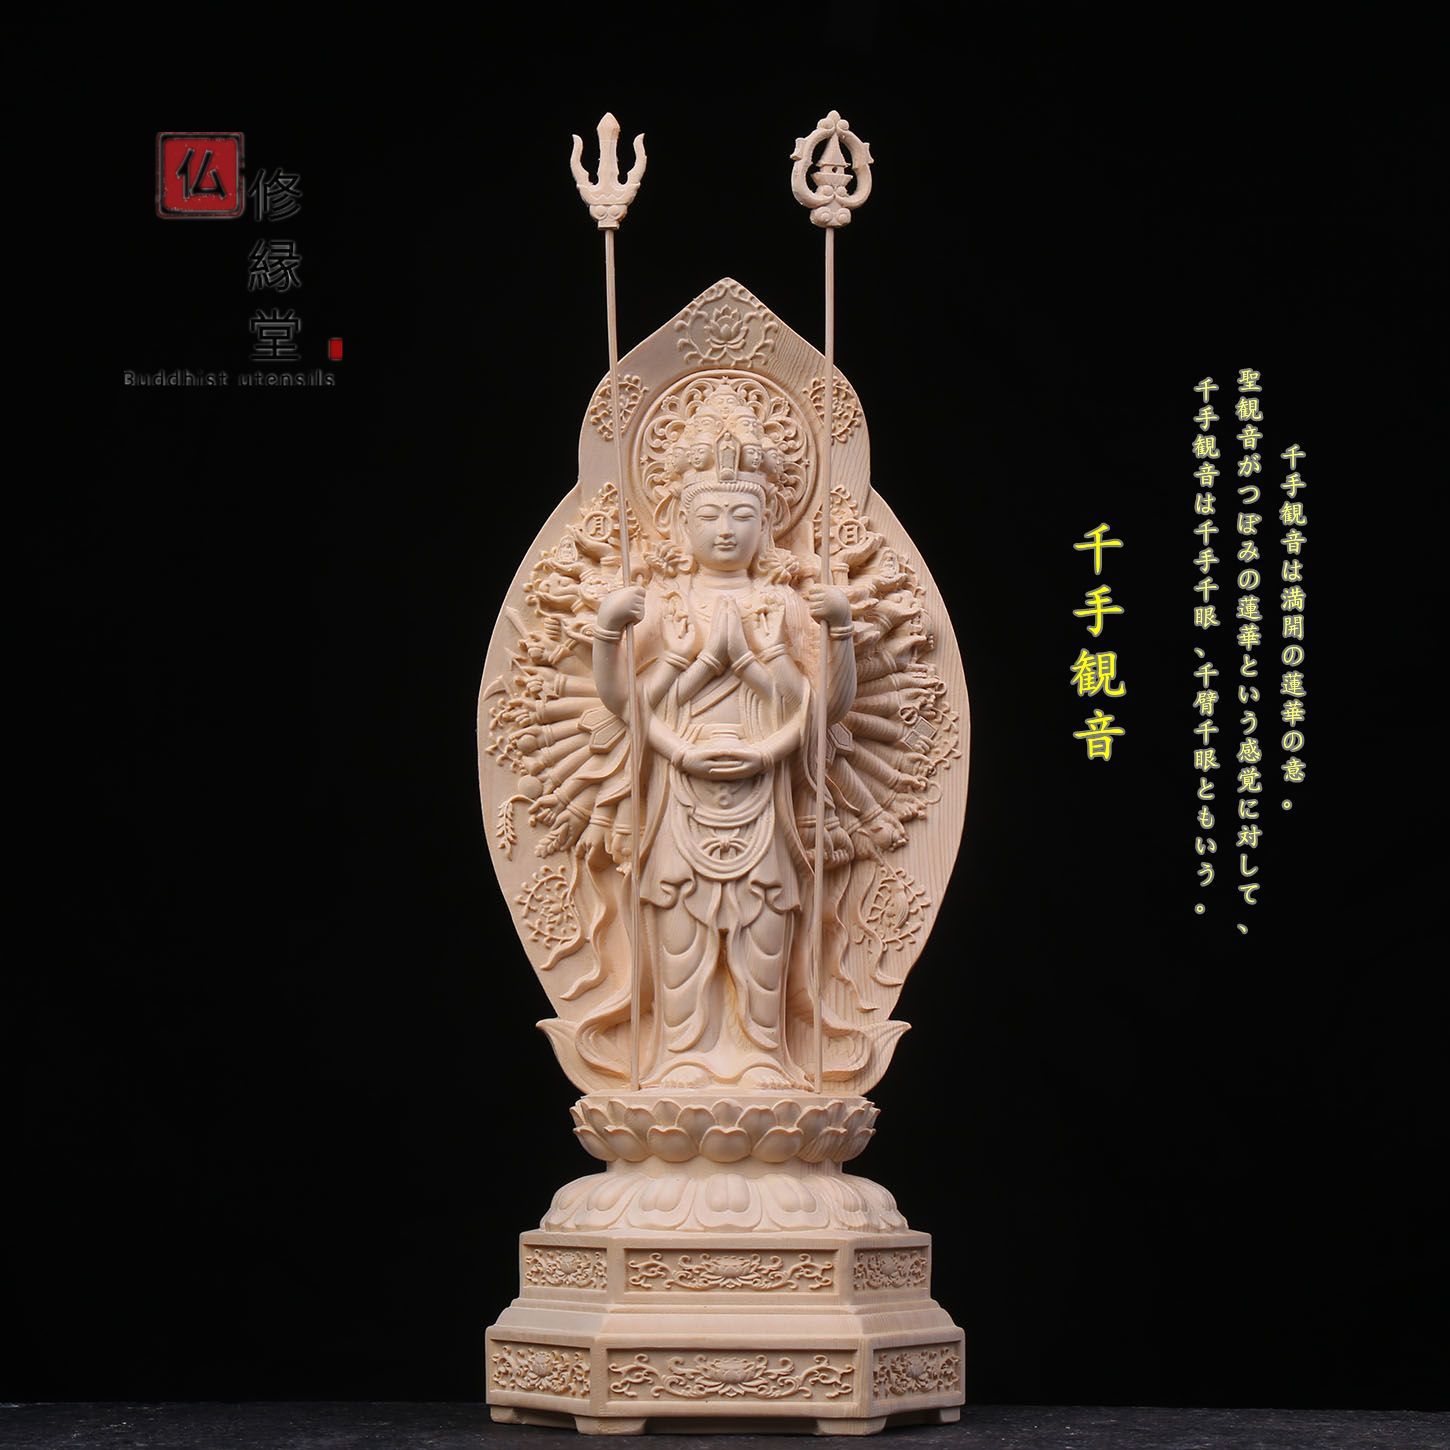 木彫り 仏像 聖観音菩薩立像 彫刻 一刀彫 天然木檜材 仏教工芸 - 彫刻